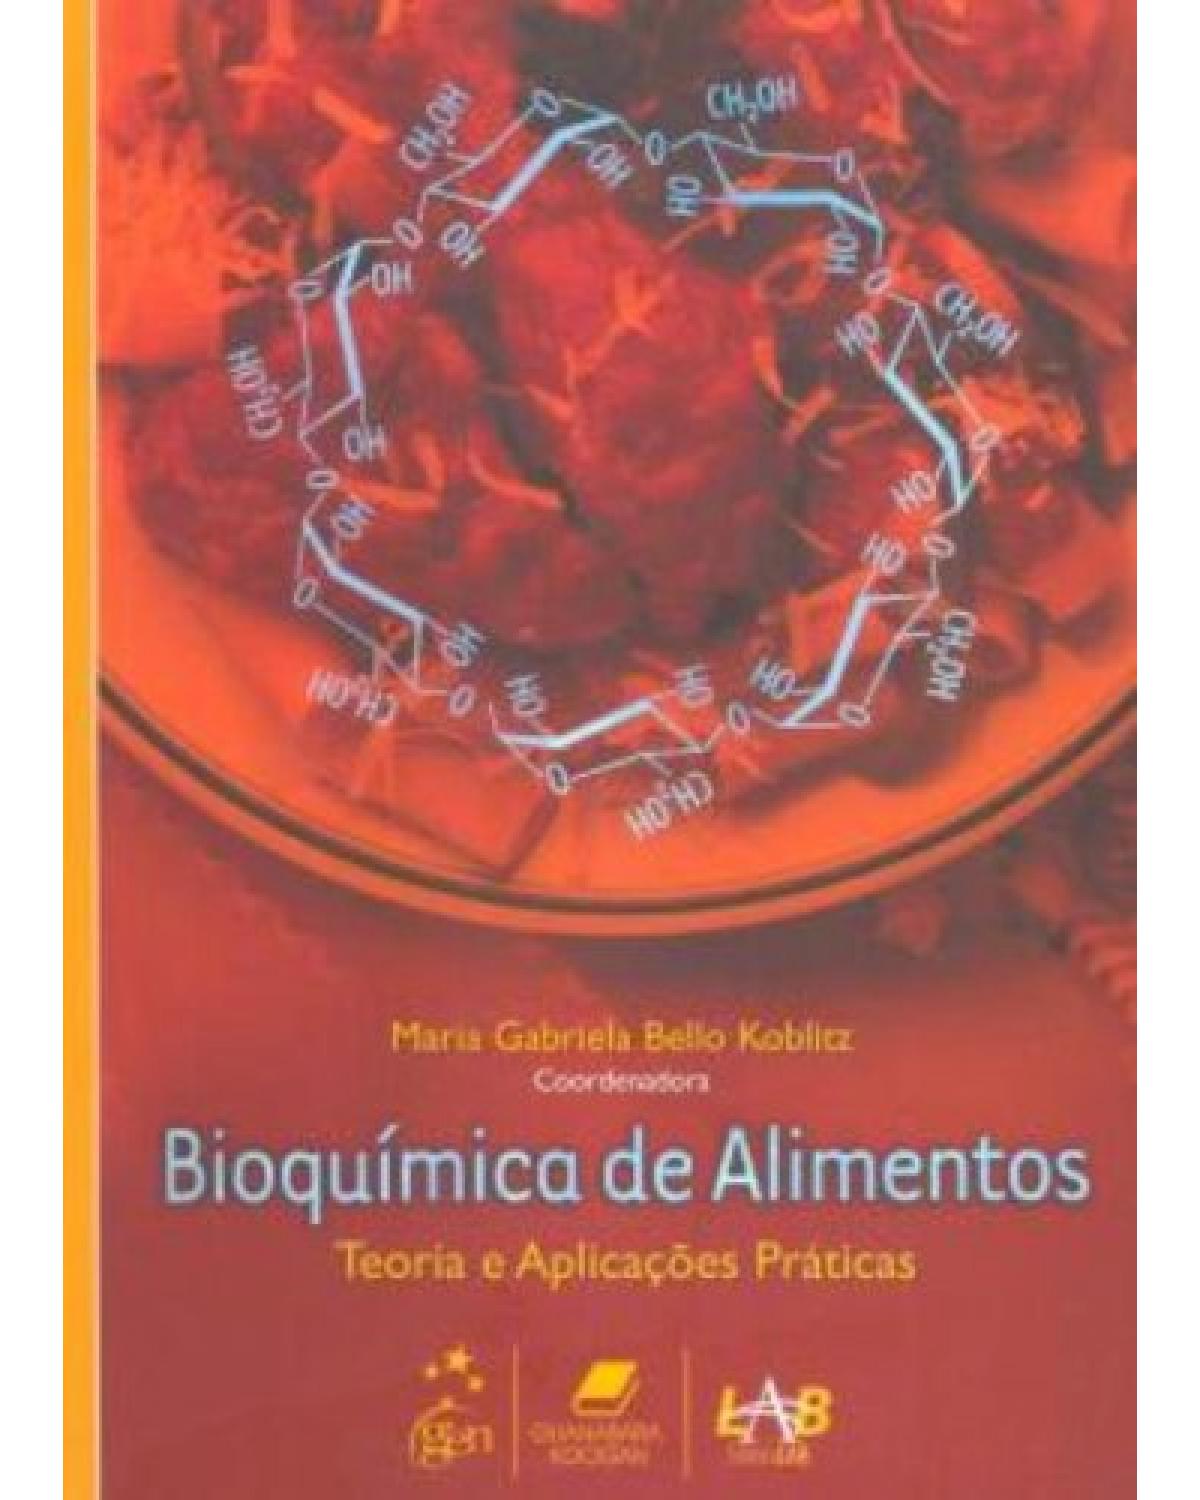 Bioquímica de alimentos - Teoria e aplicações práticas - 1ª Edição | 2008